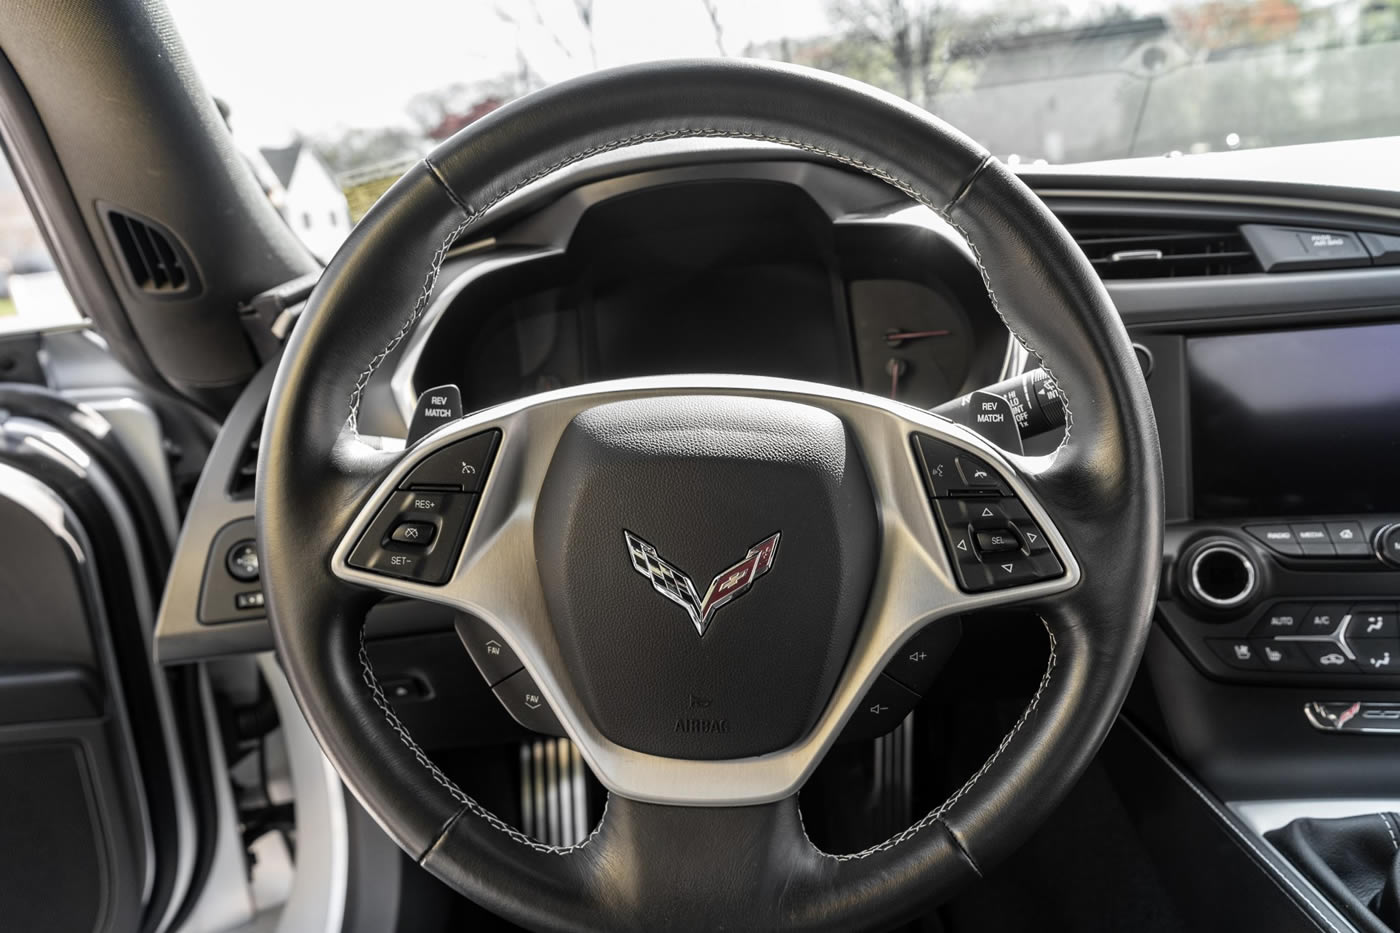 2014 Corvette Stingray Coupe in Blade Silver Metallic